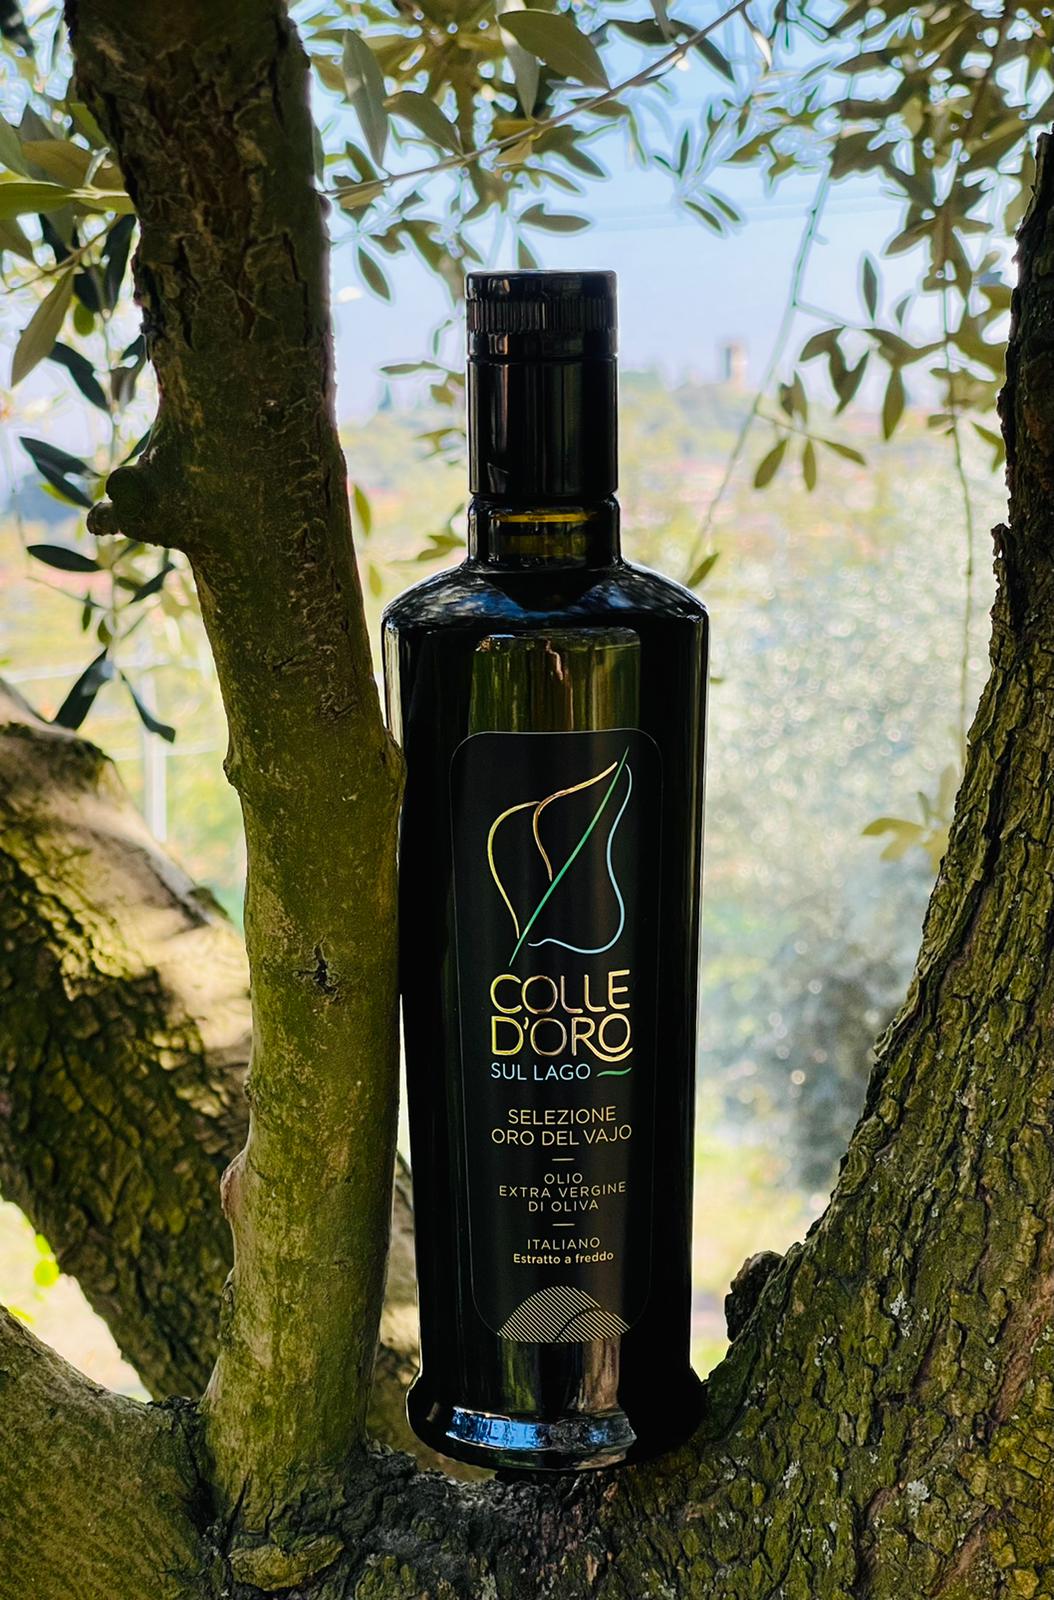 Olio extra vergine di oliva Italiano - Selezione "Oro del Vajo" - 500 ml